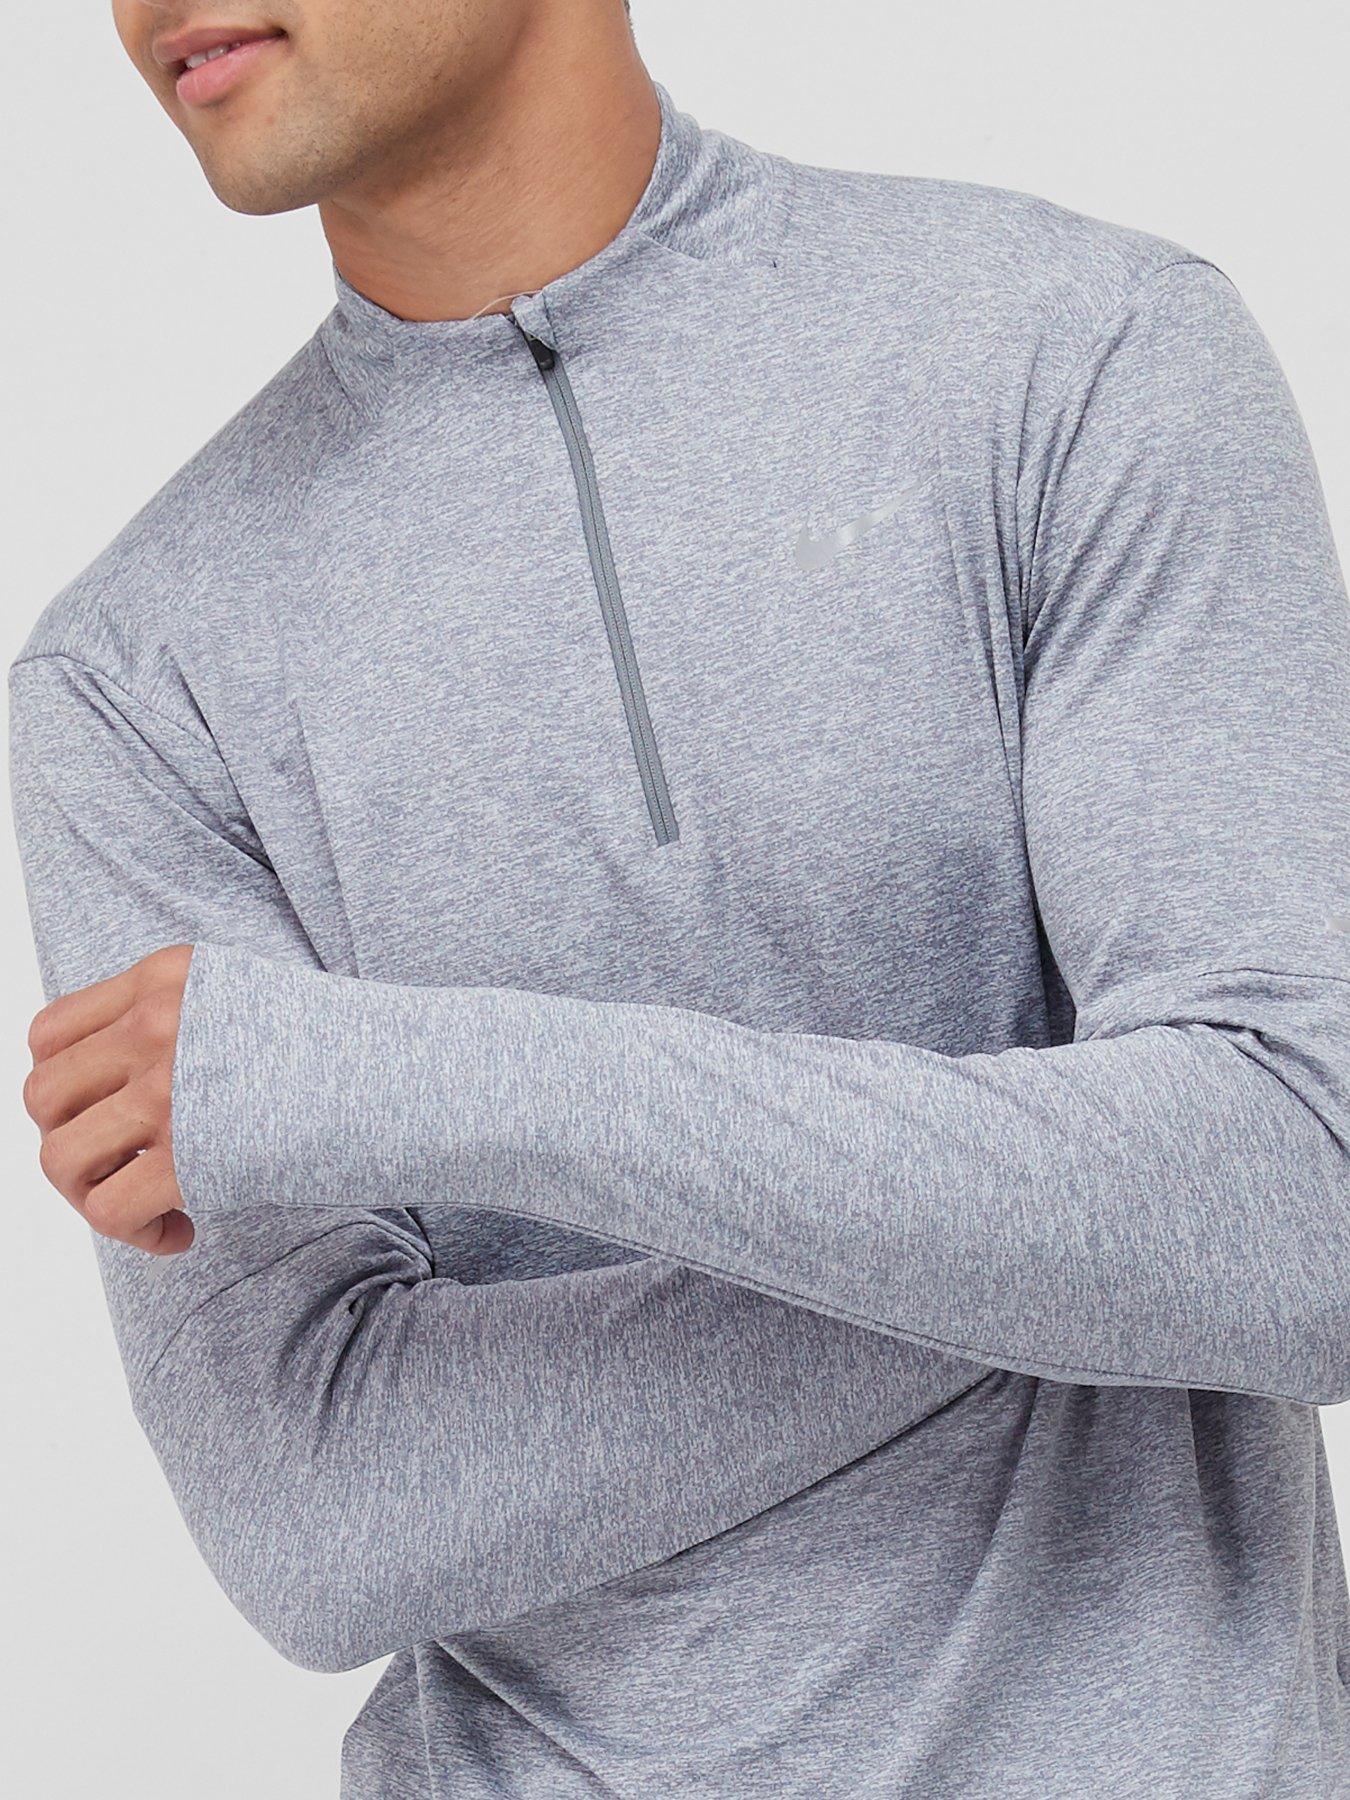 Hoodies & Sweatshirts Run Dri Fit Element Top 1/2 Zip Top - Grey